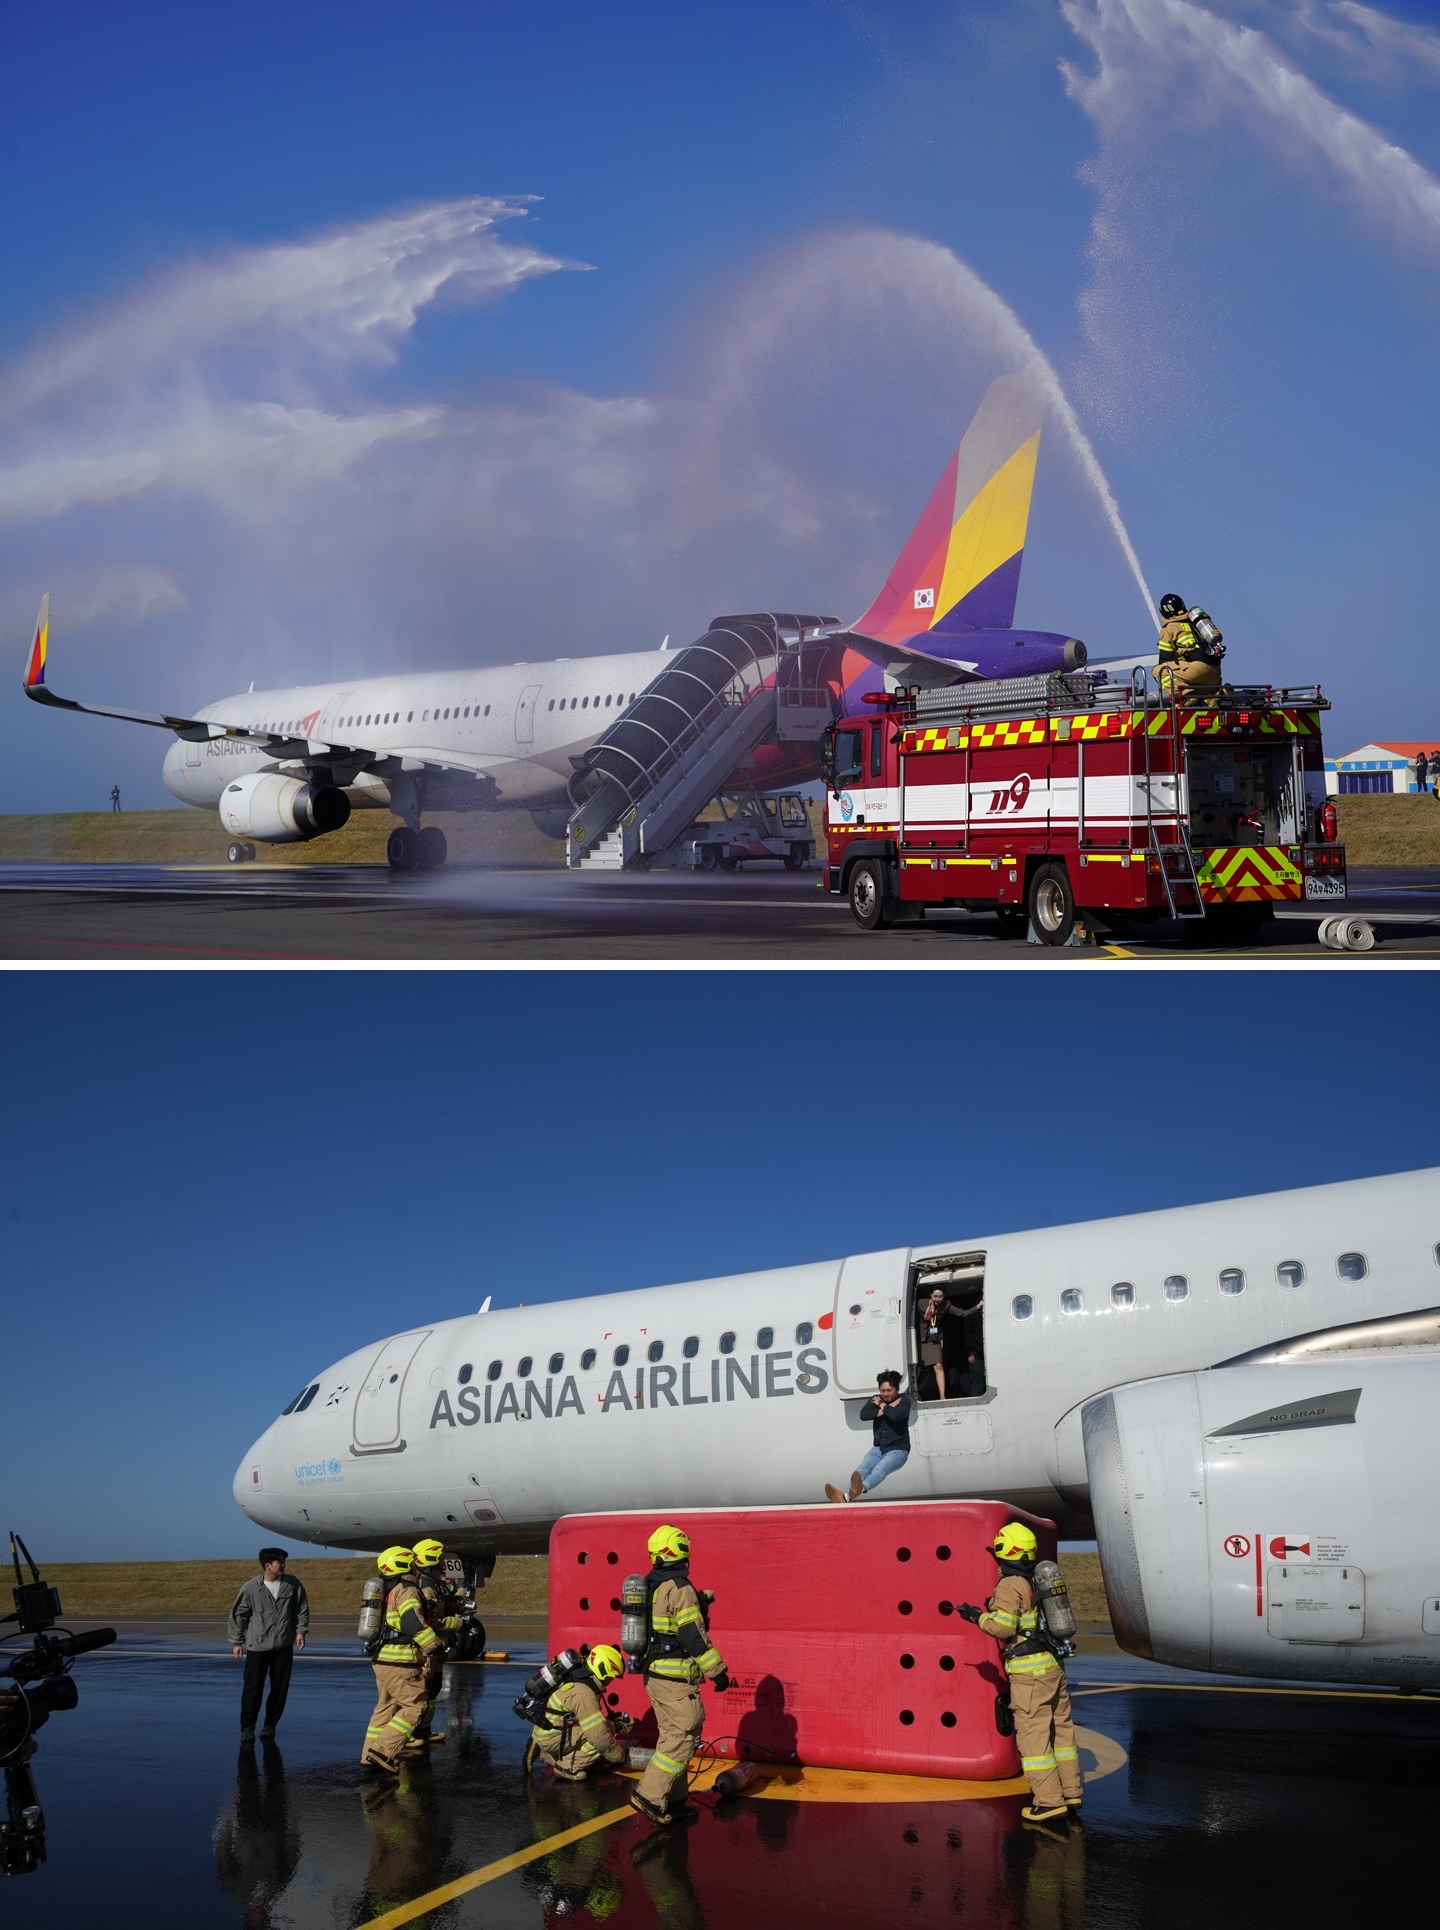 마치 실제 비행기 화재가 난듯 소방차가 비행기에 물을 방사하는 화재진압훈련을 하고 있다. 아래는 탑승객이 탈출하는 모습. 제주도소방안전본부 제공